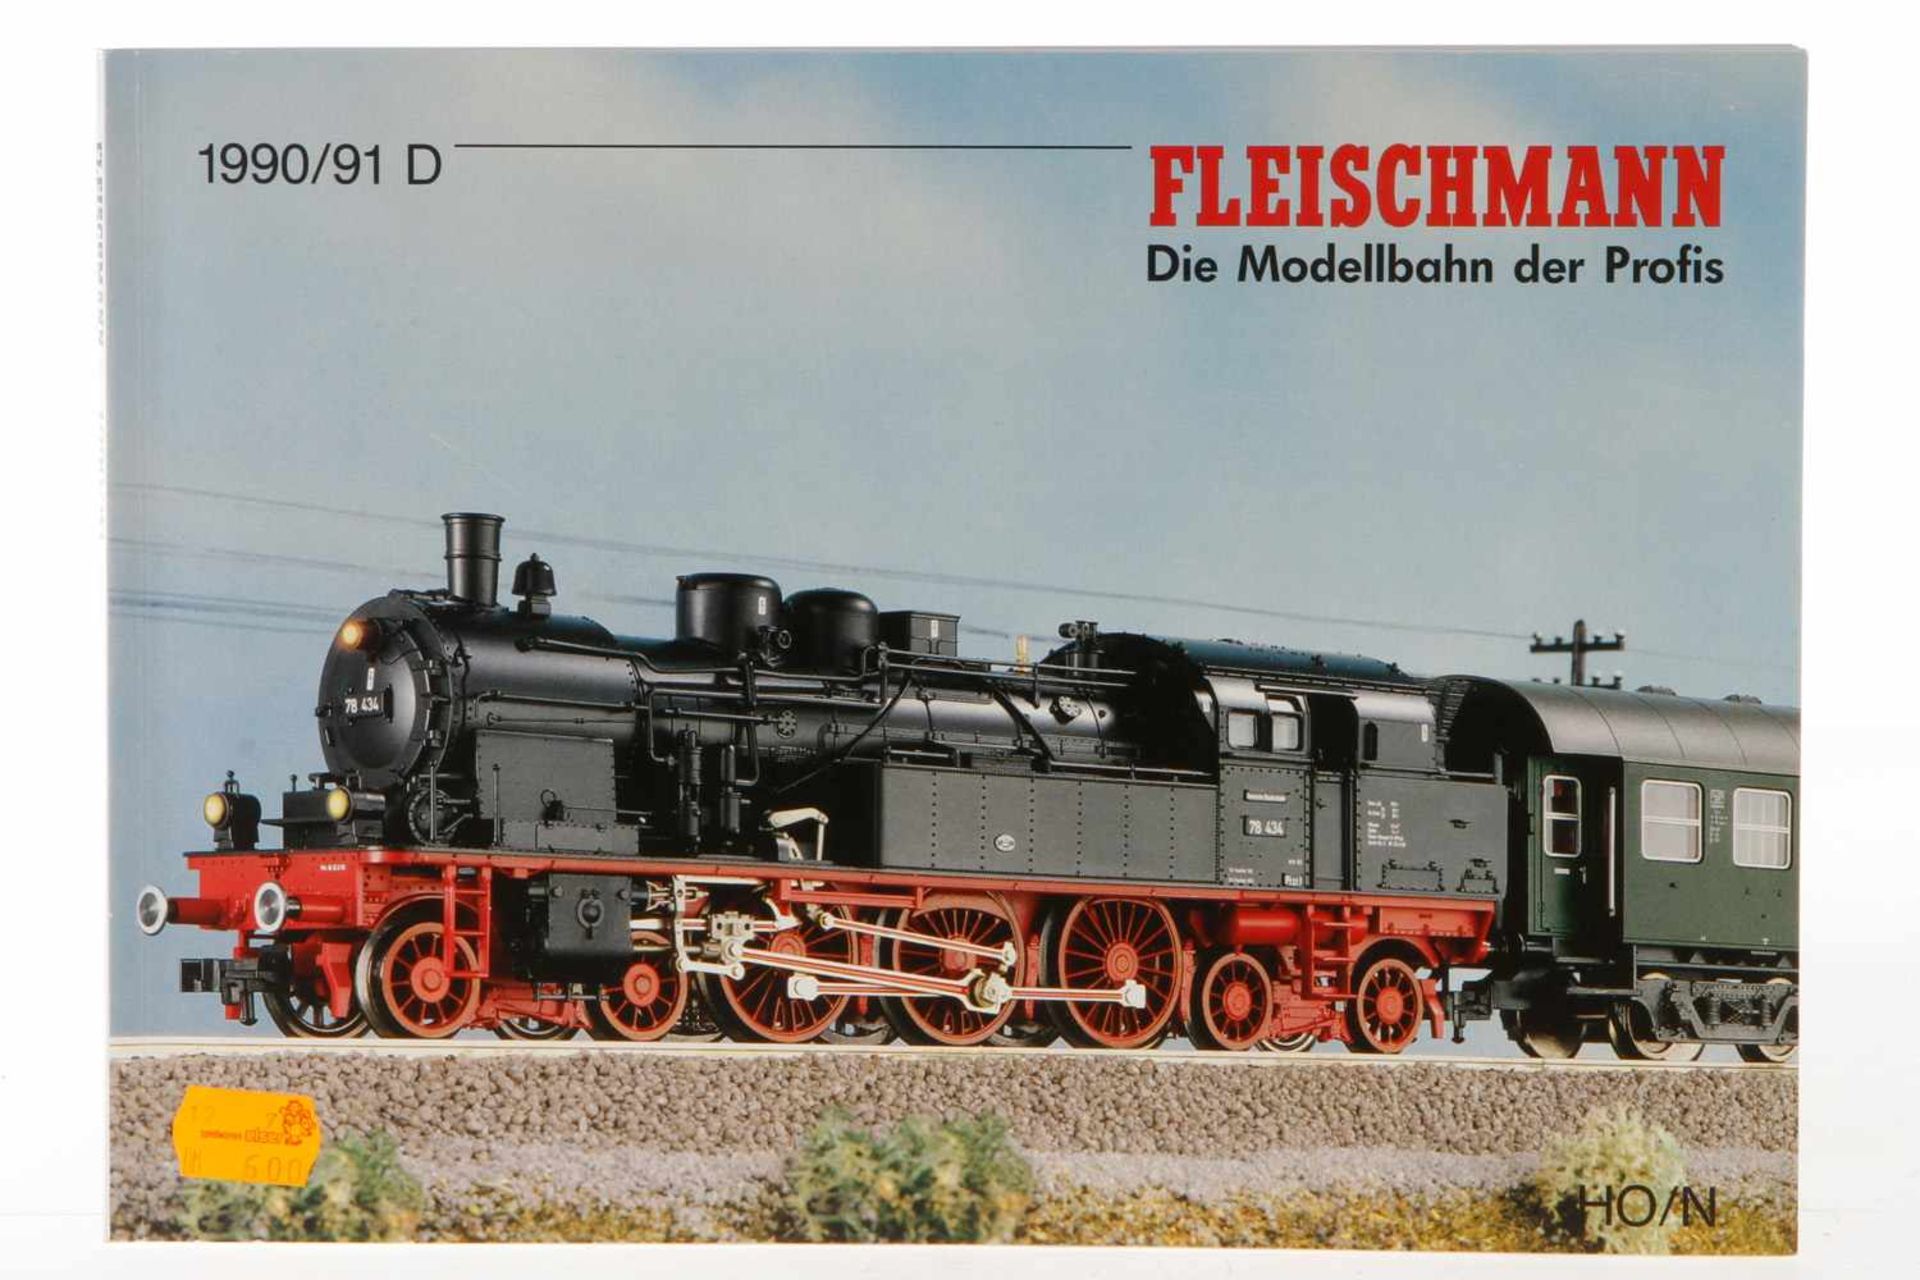 Fleischmann Katalog 1990/91 D